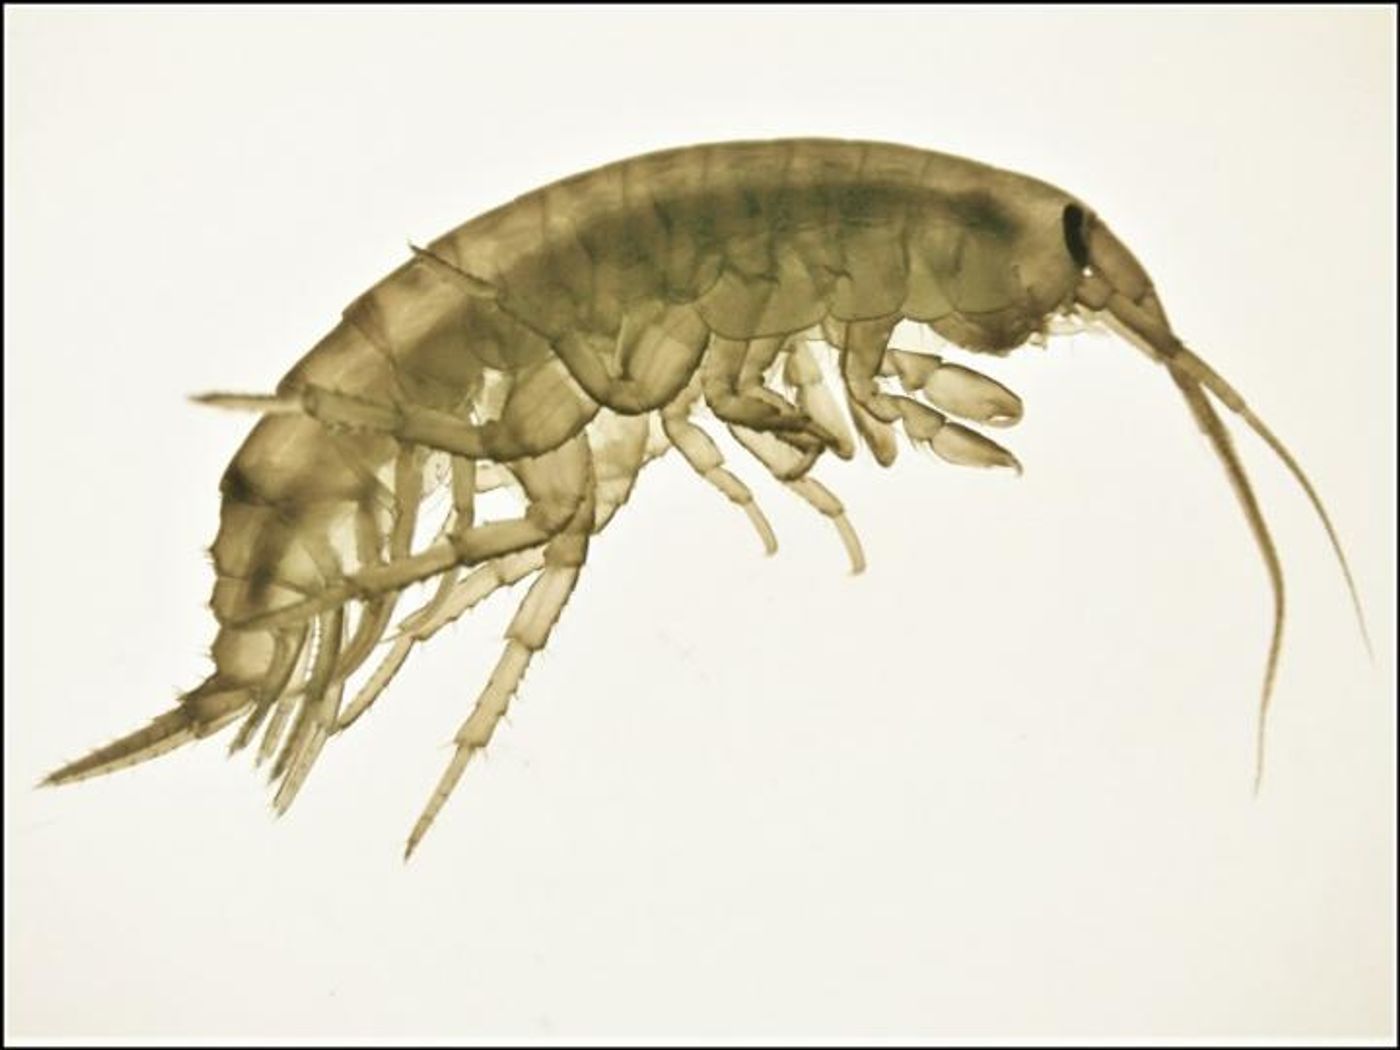 An adult male amphipod Echinogammarus marinus. / Credit: University of Portsmouth